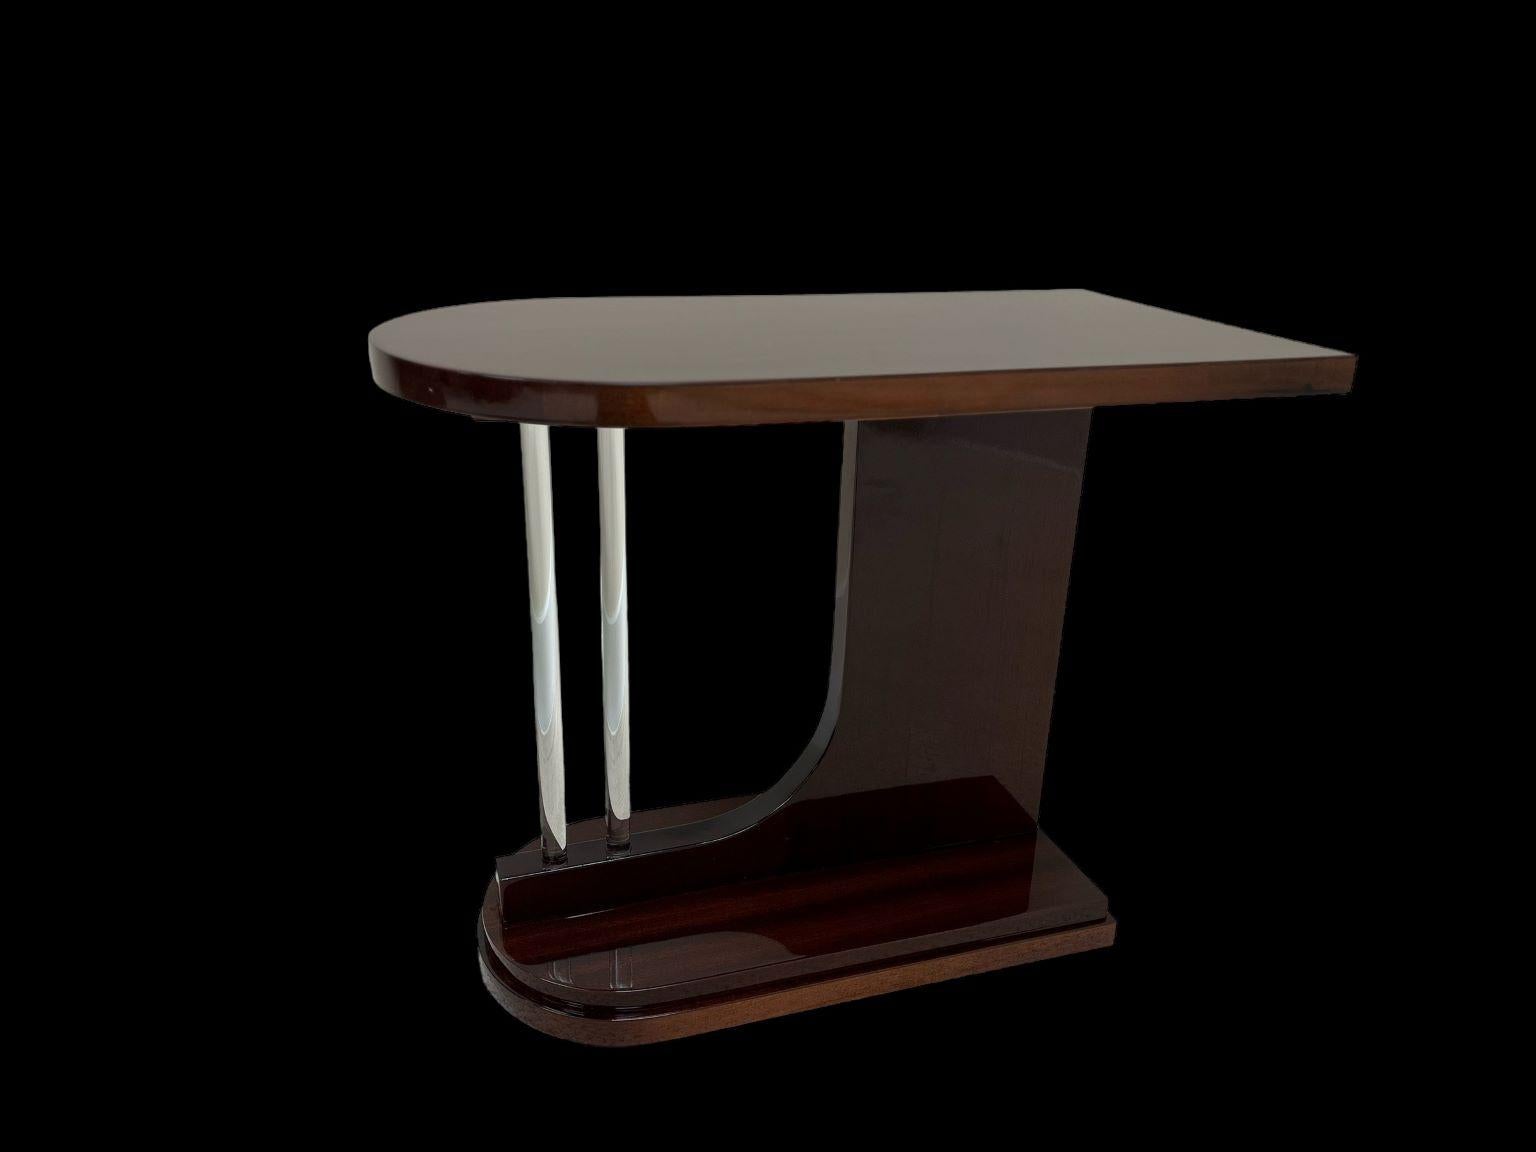 Table d'appoint en acajou Streamline Moderne Art Deco. La table a un design unique en forme de balle avec deux éléments décoratifs en verre massif. L'acajou est magnifiquement restauré dans une finition brillante. Un bel exemple de l'âge de la